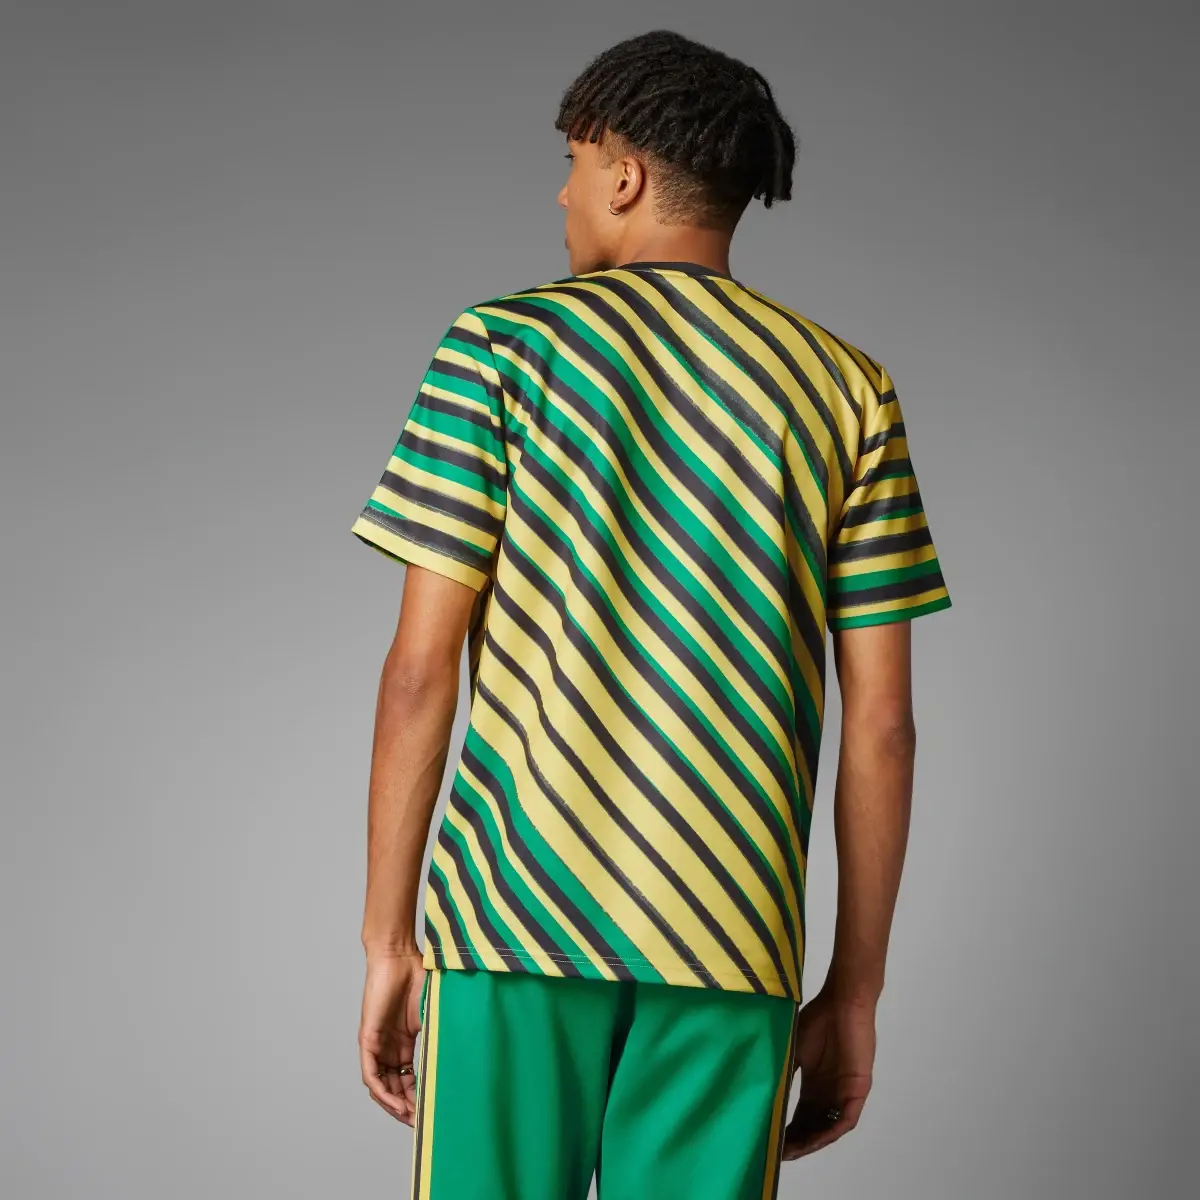 Adidas Camiseta Trefoil Jamaica. 2